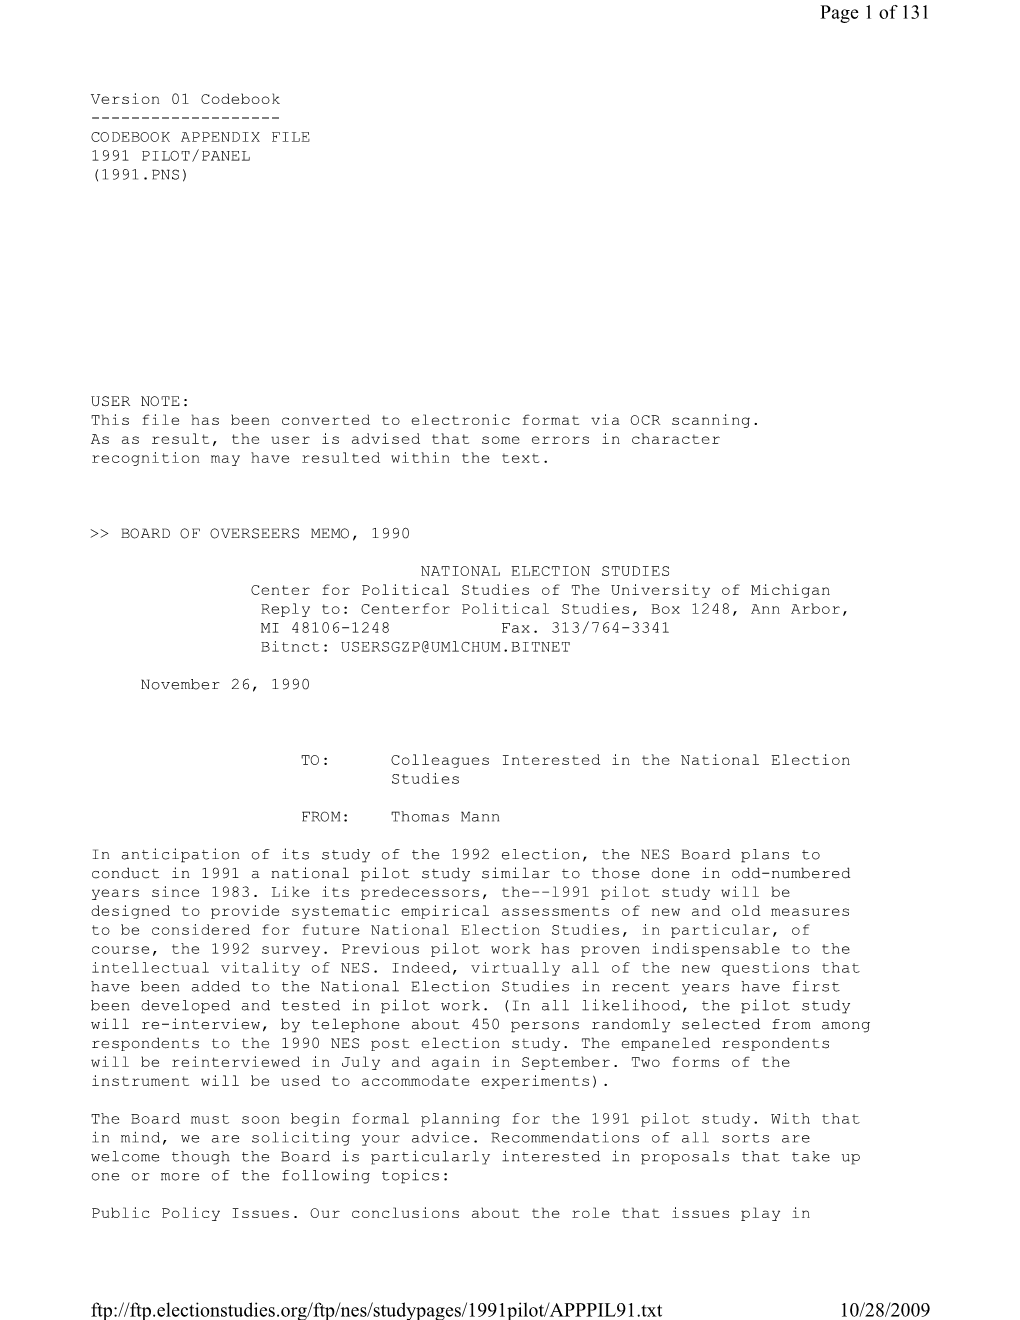 Appendix File 1991 Pilot/Panel (1991.Pns)